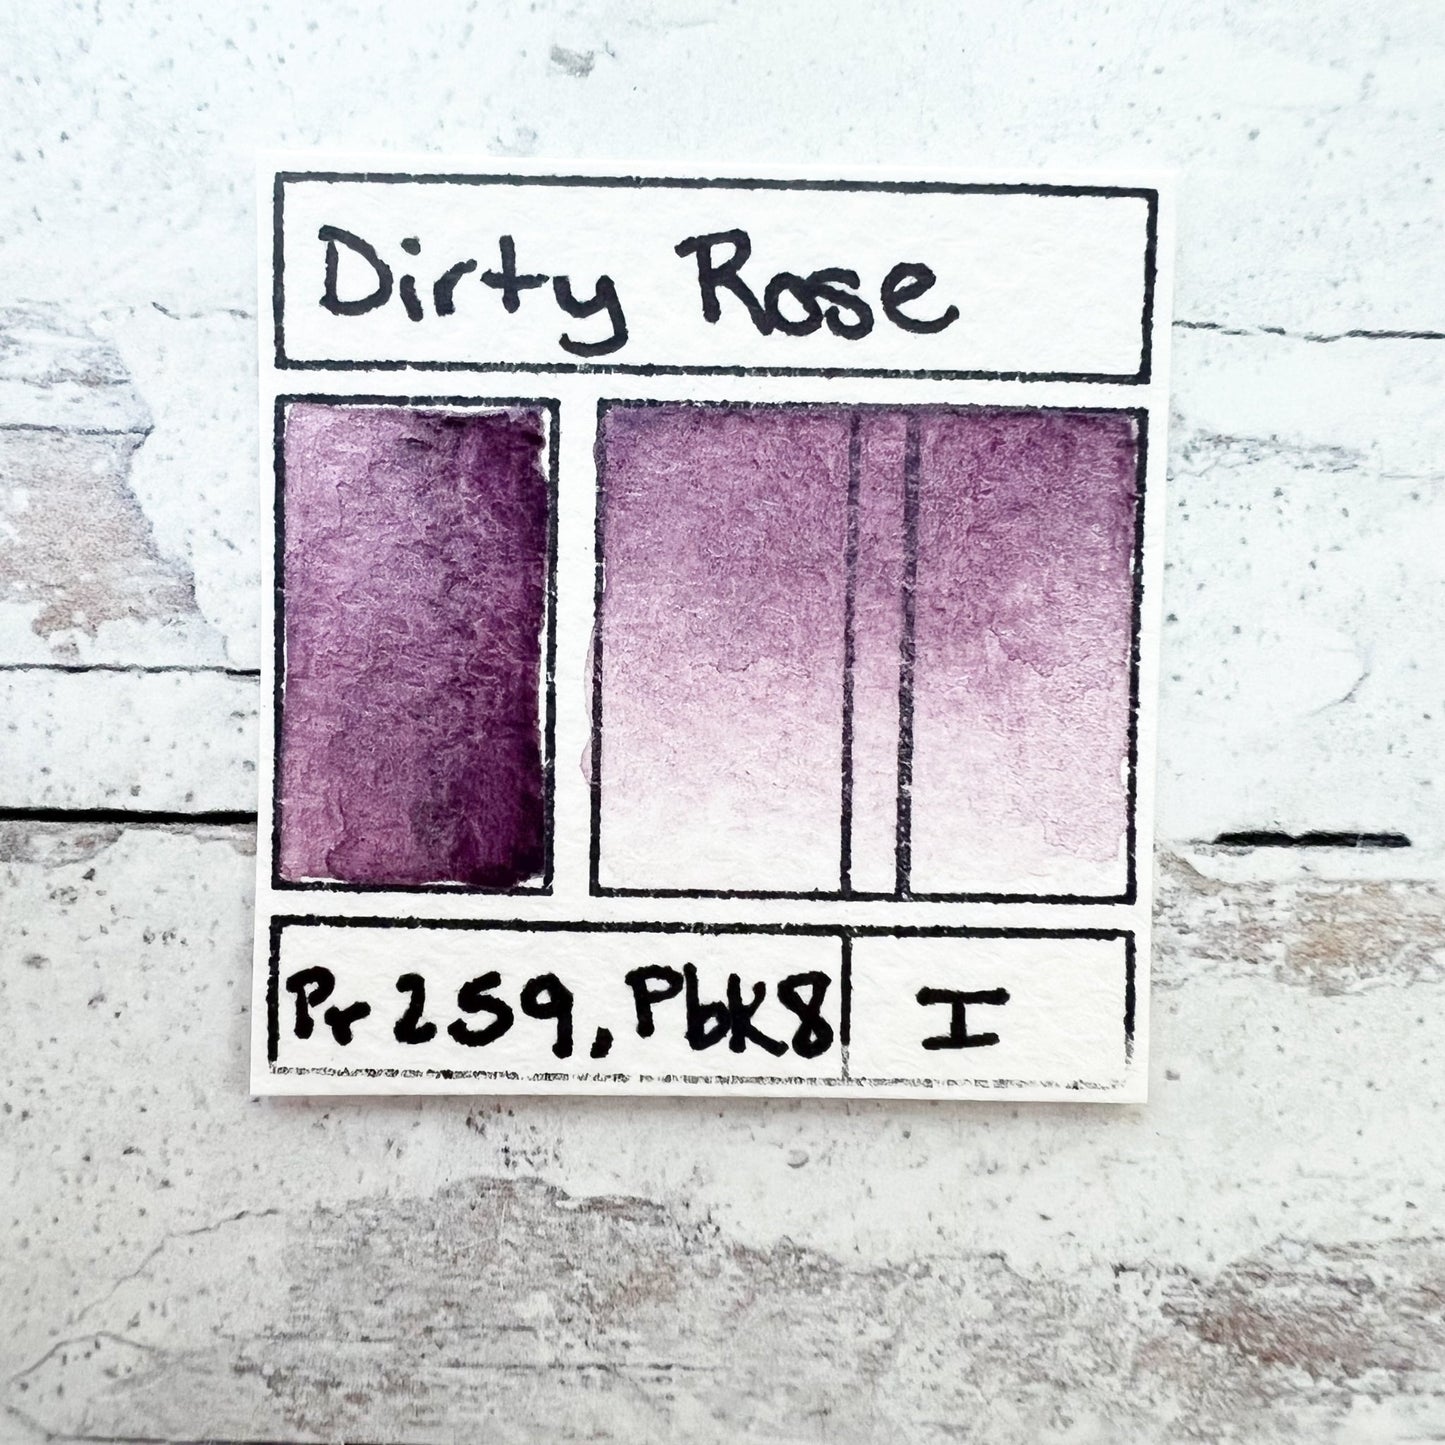 Dirty Rose. Half pan, full pan or bottle cap of handmade watercolor paint